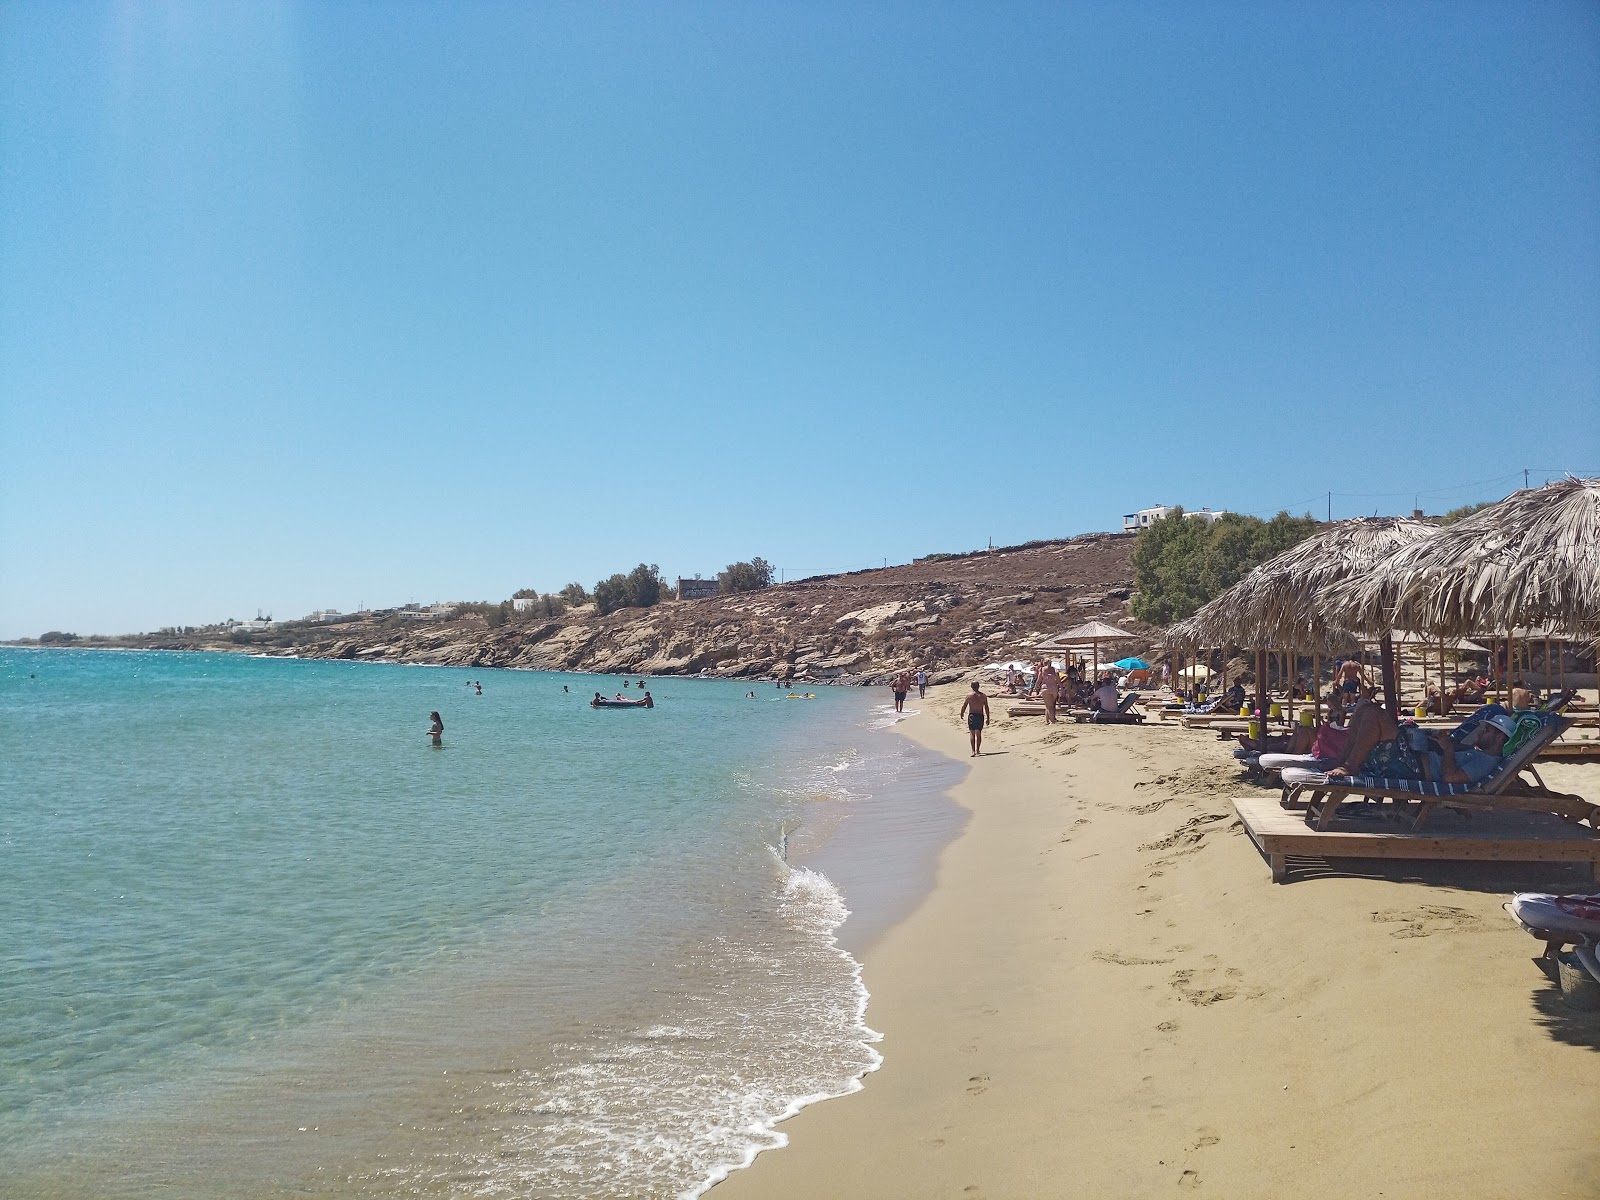 Photo of Punda beach beach resort area